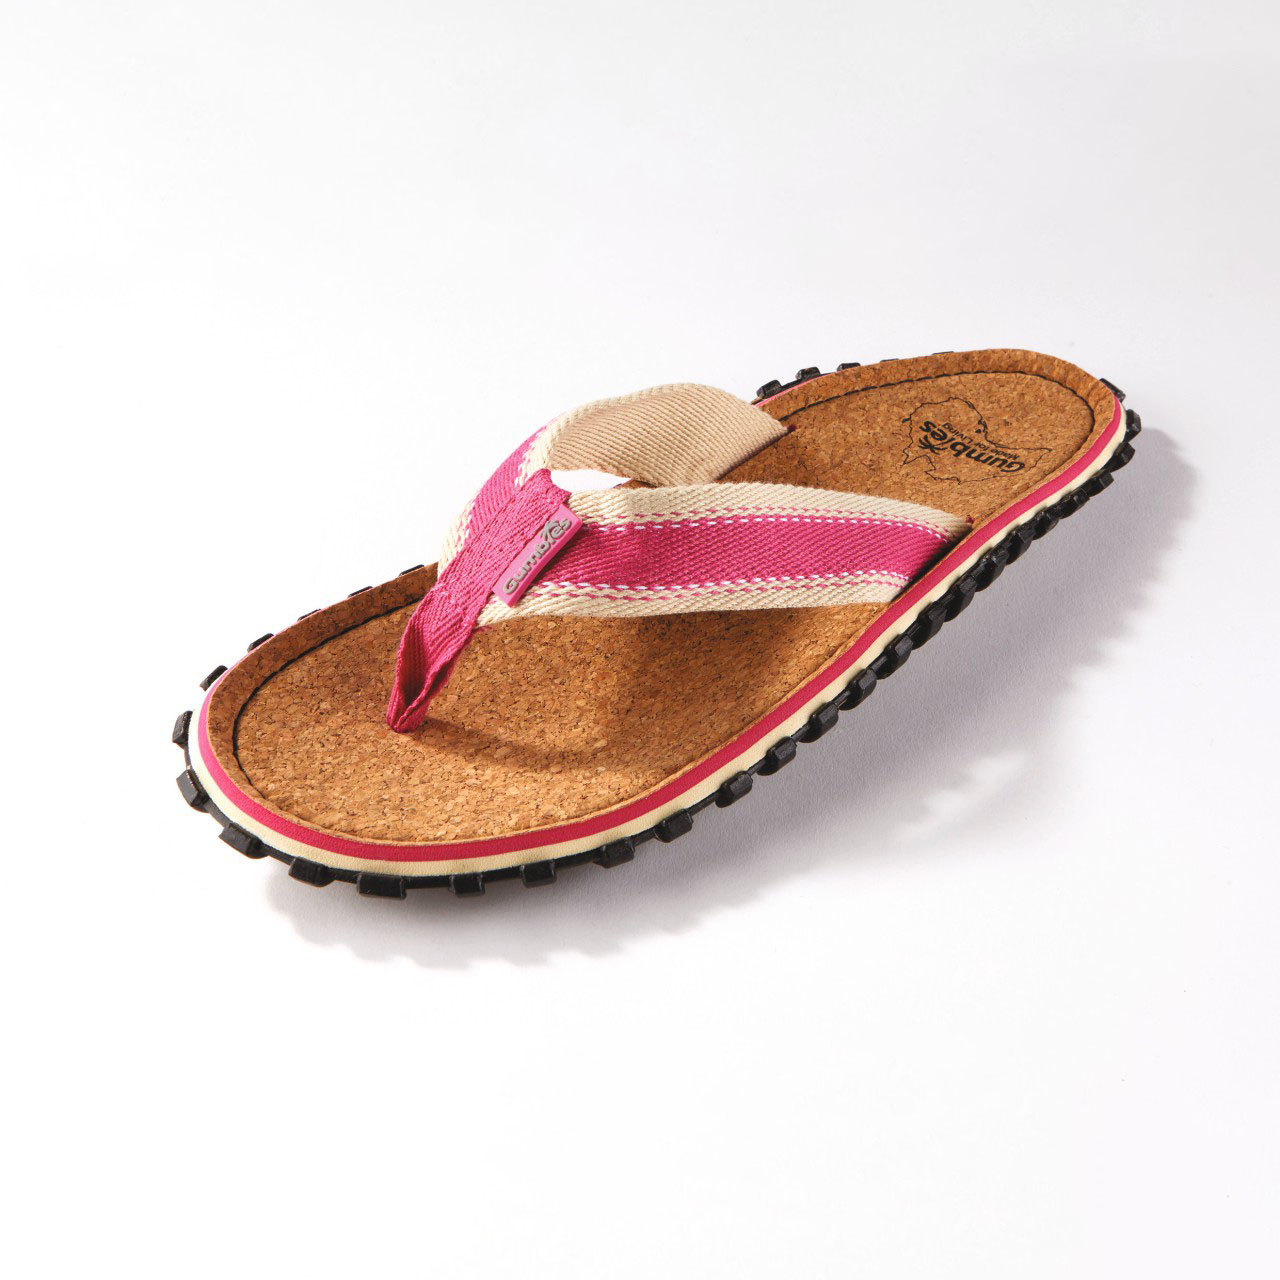 Gumbies Original 1,000-Miler Flip Flop Sandals